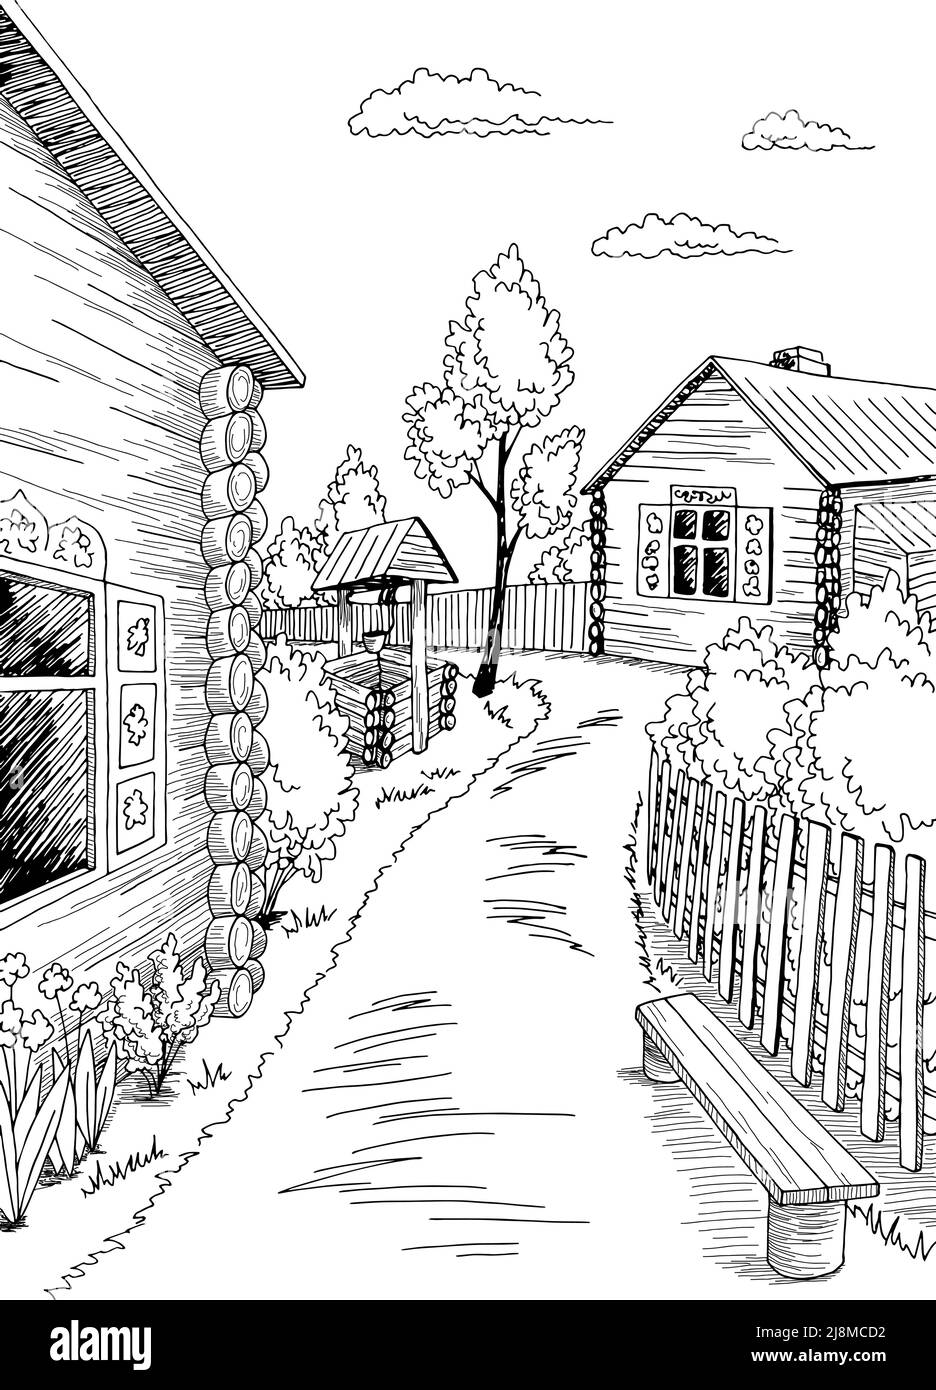 Alte Dorf Grafik schwarz weiß ländlichen vertikalen Landschaft Skizze Illustration Vektor Stock Vektor